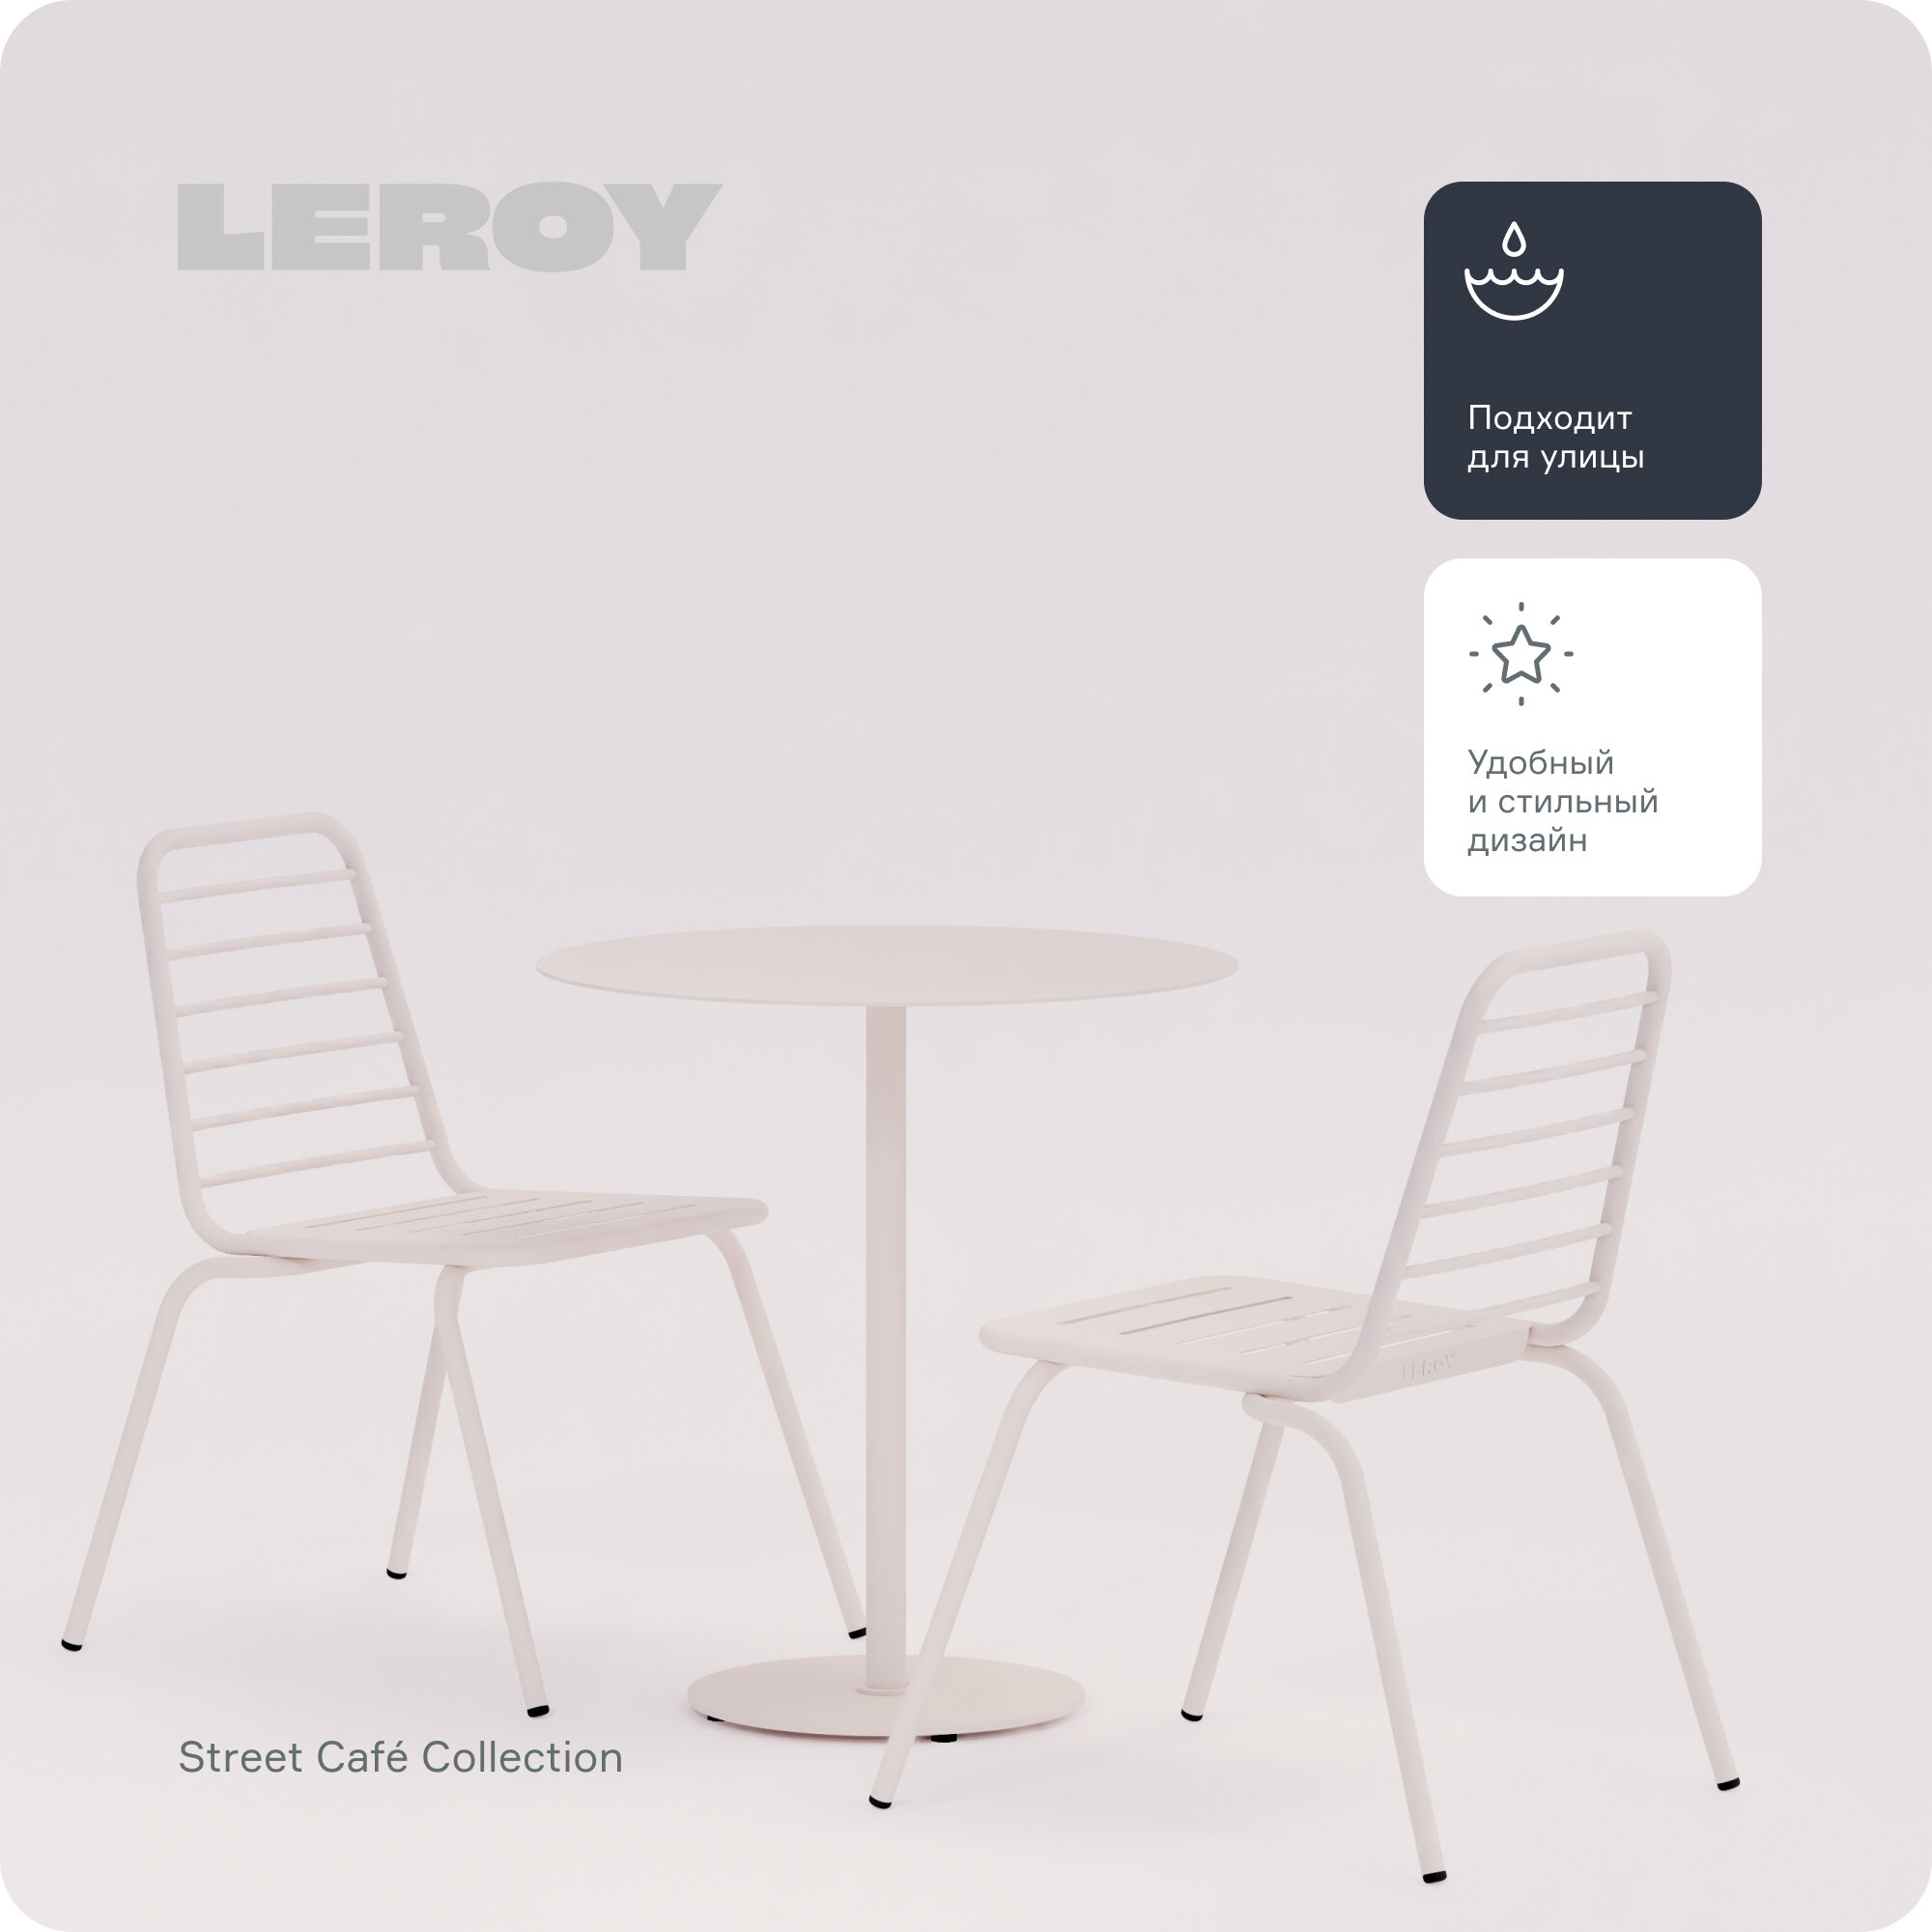 Набор обеденной мебели Street Café от бренда Leroy Design: один круглый стол и два стула, цвет: светло-серый